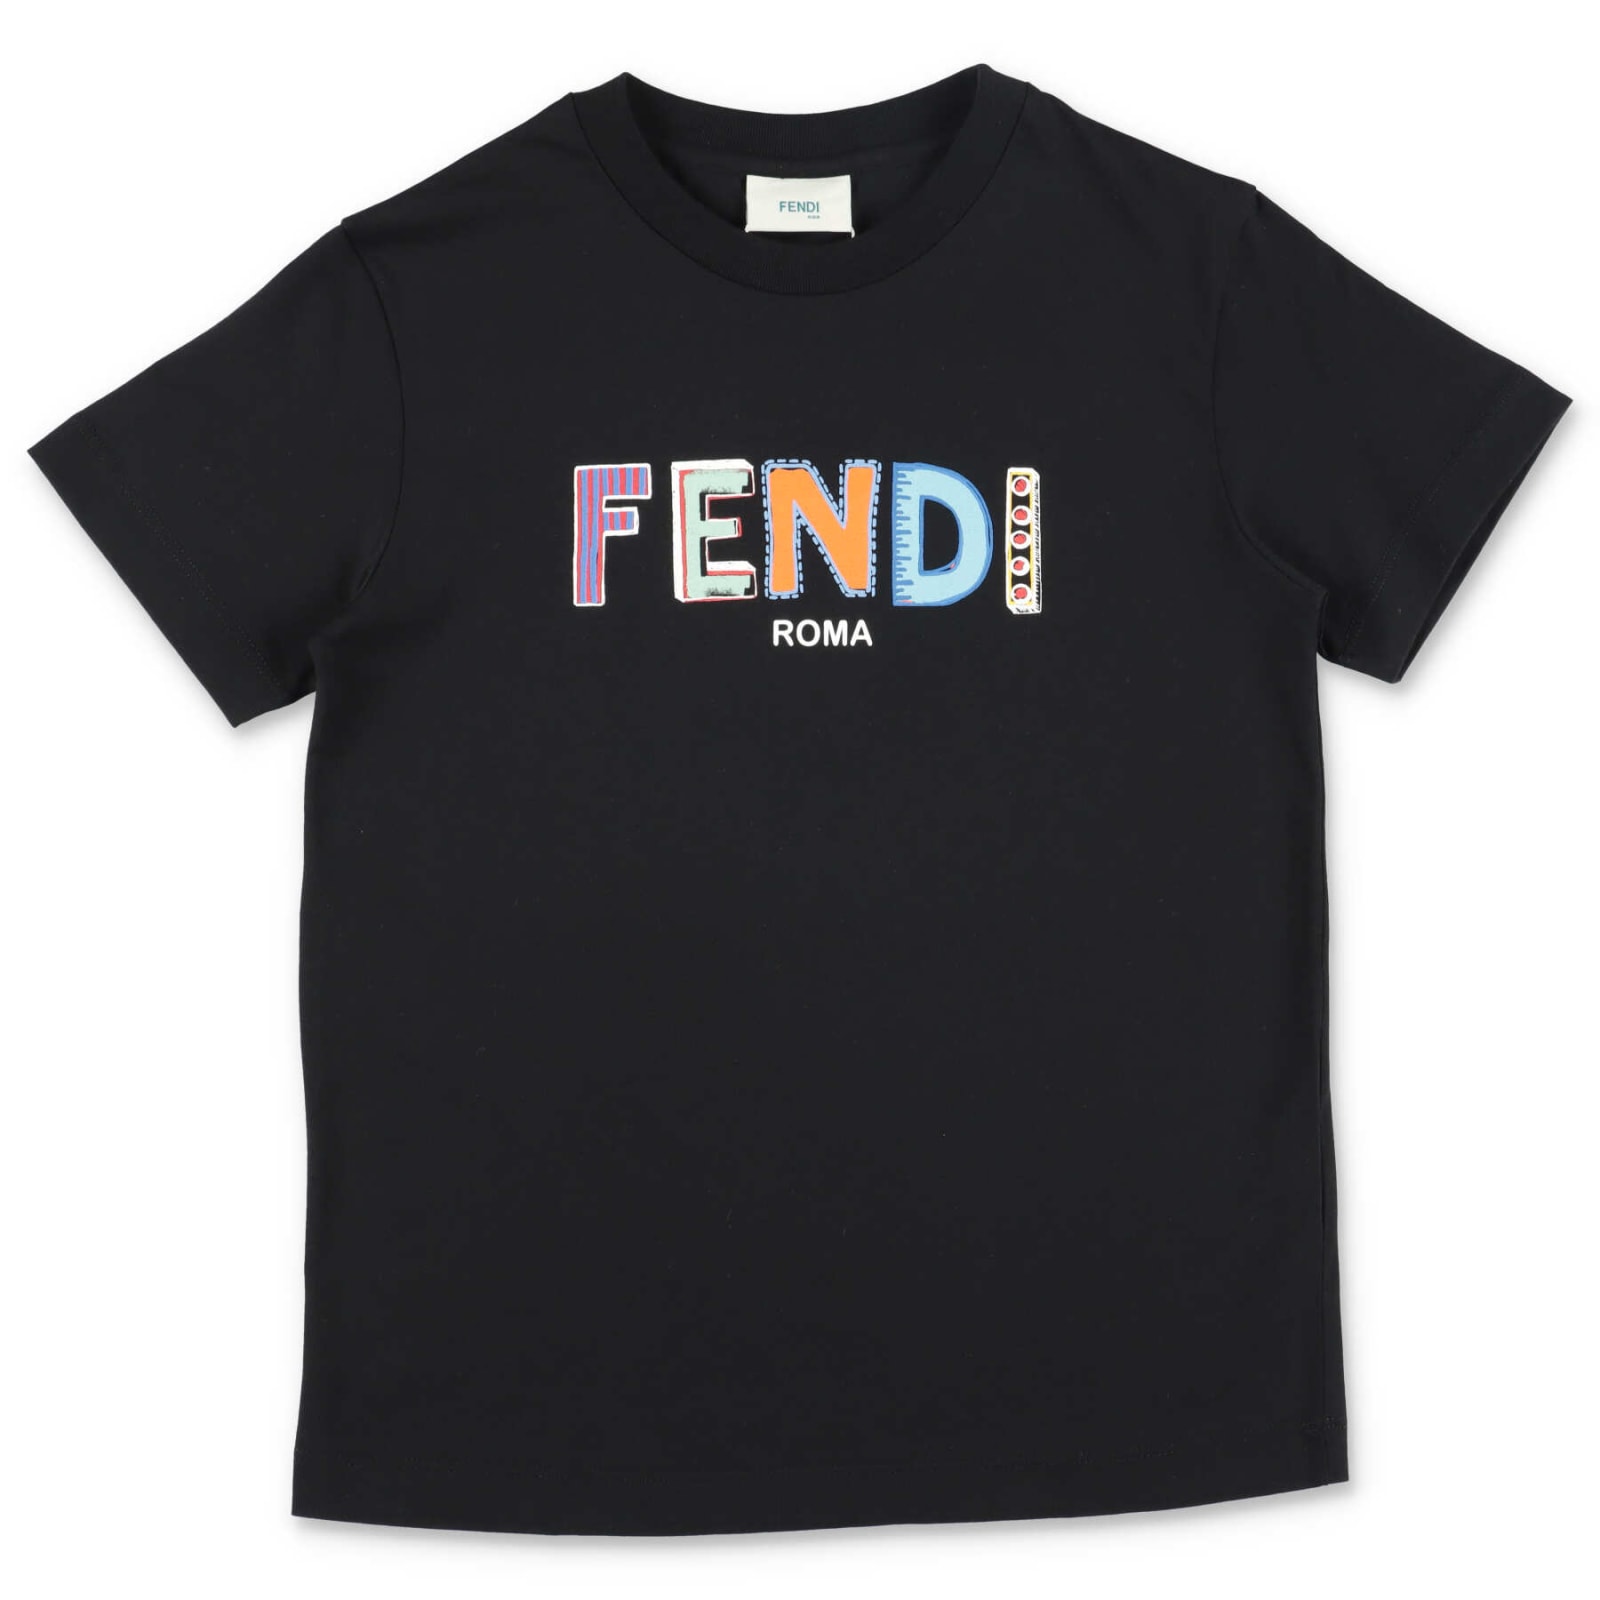 Fendi T-shirt Nera In Jersey Di Cotone